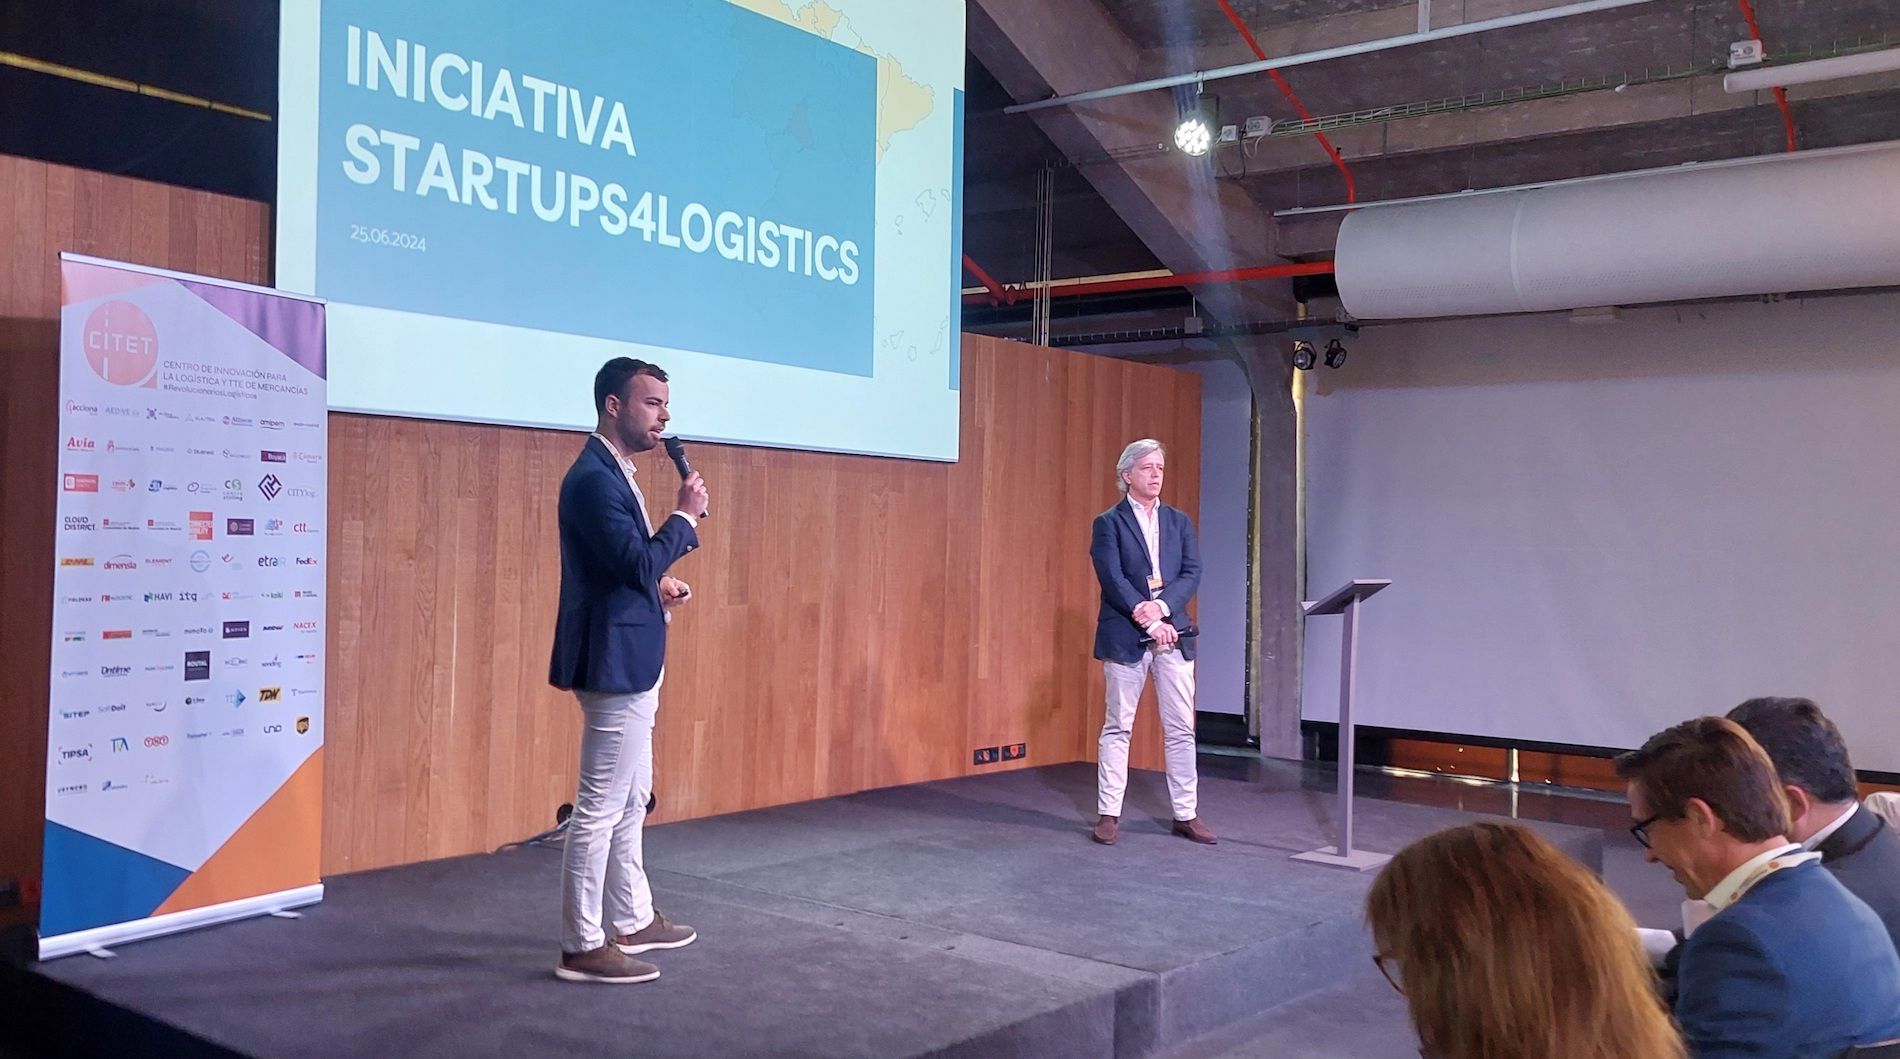 Presentacion Startups4Logistics Citet y Menttoriza